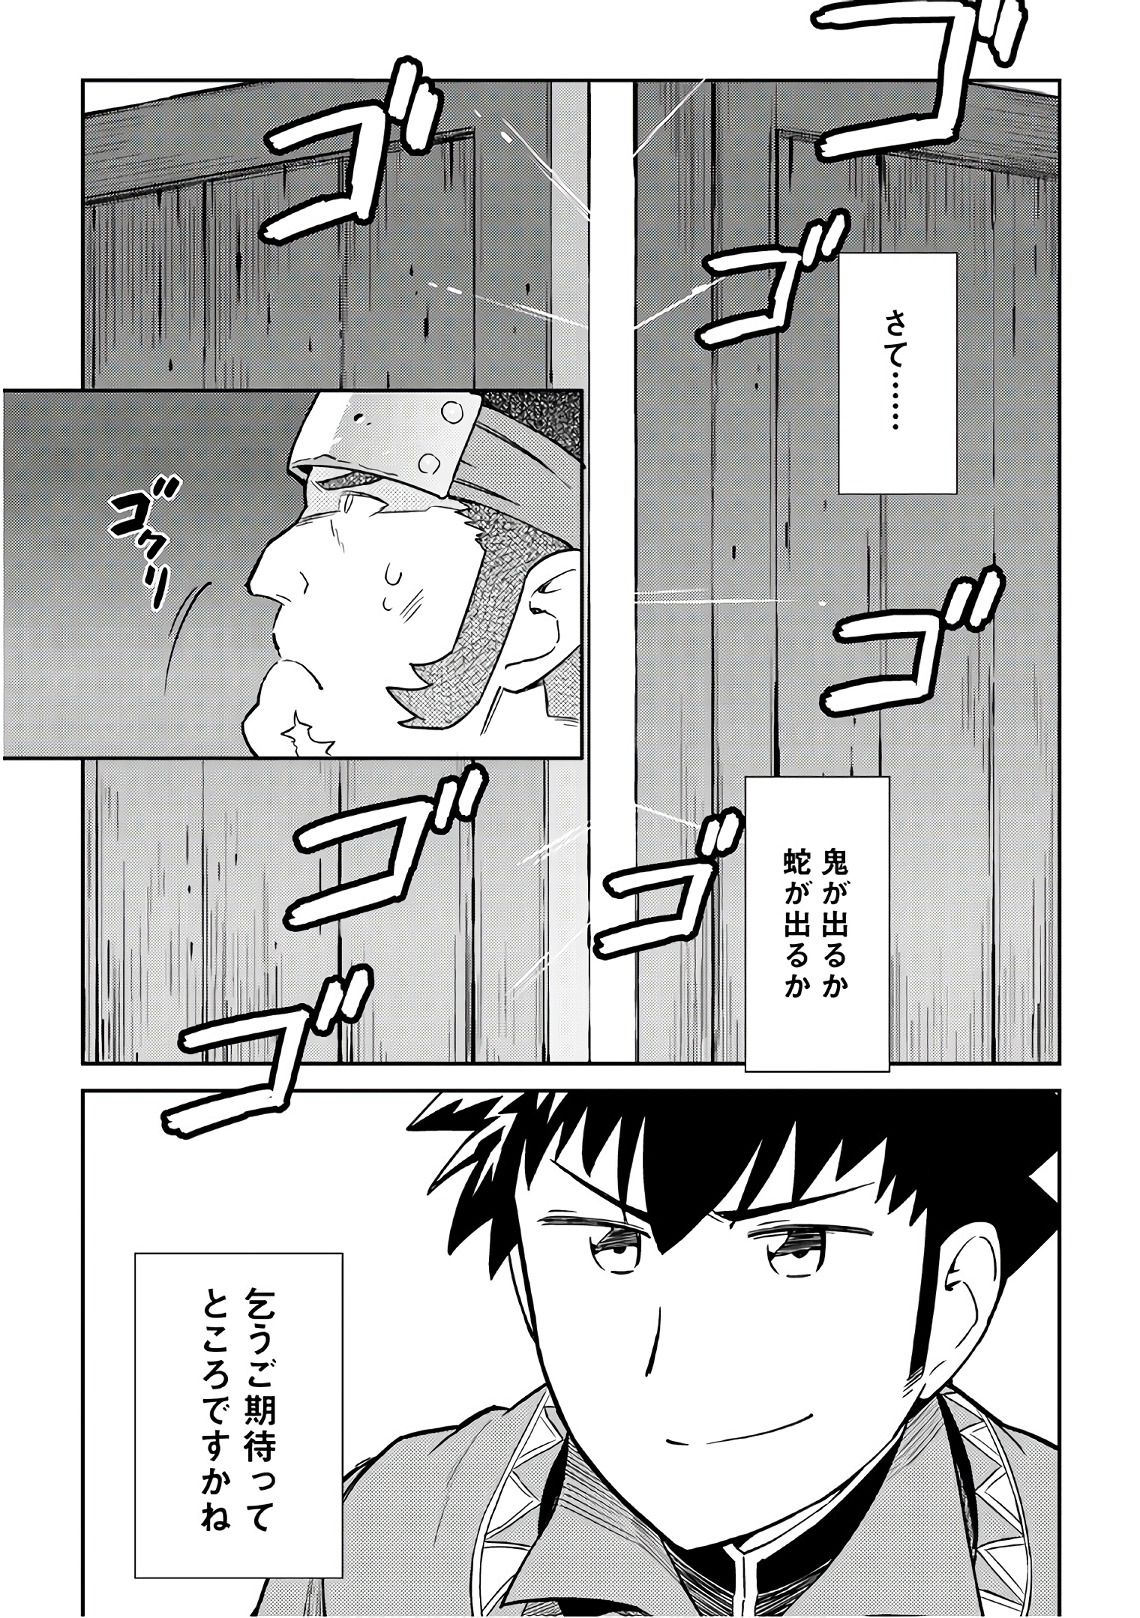 Toaru Ossan no VRMMO Katsudouki - Chapter 43 - Page 23